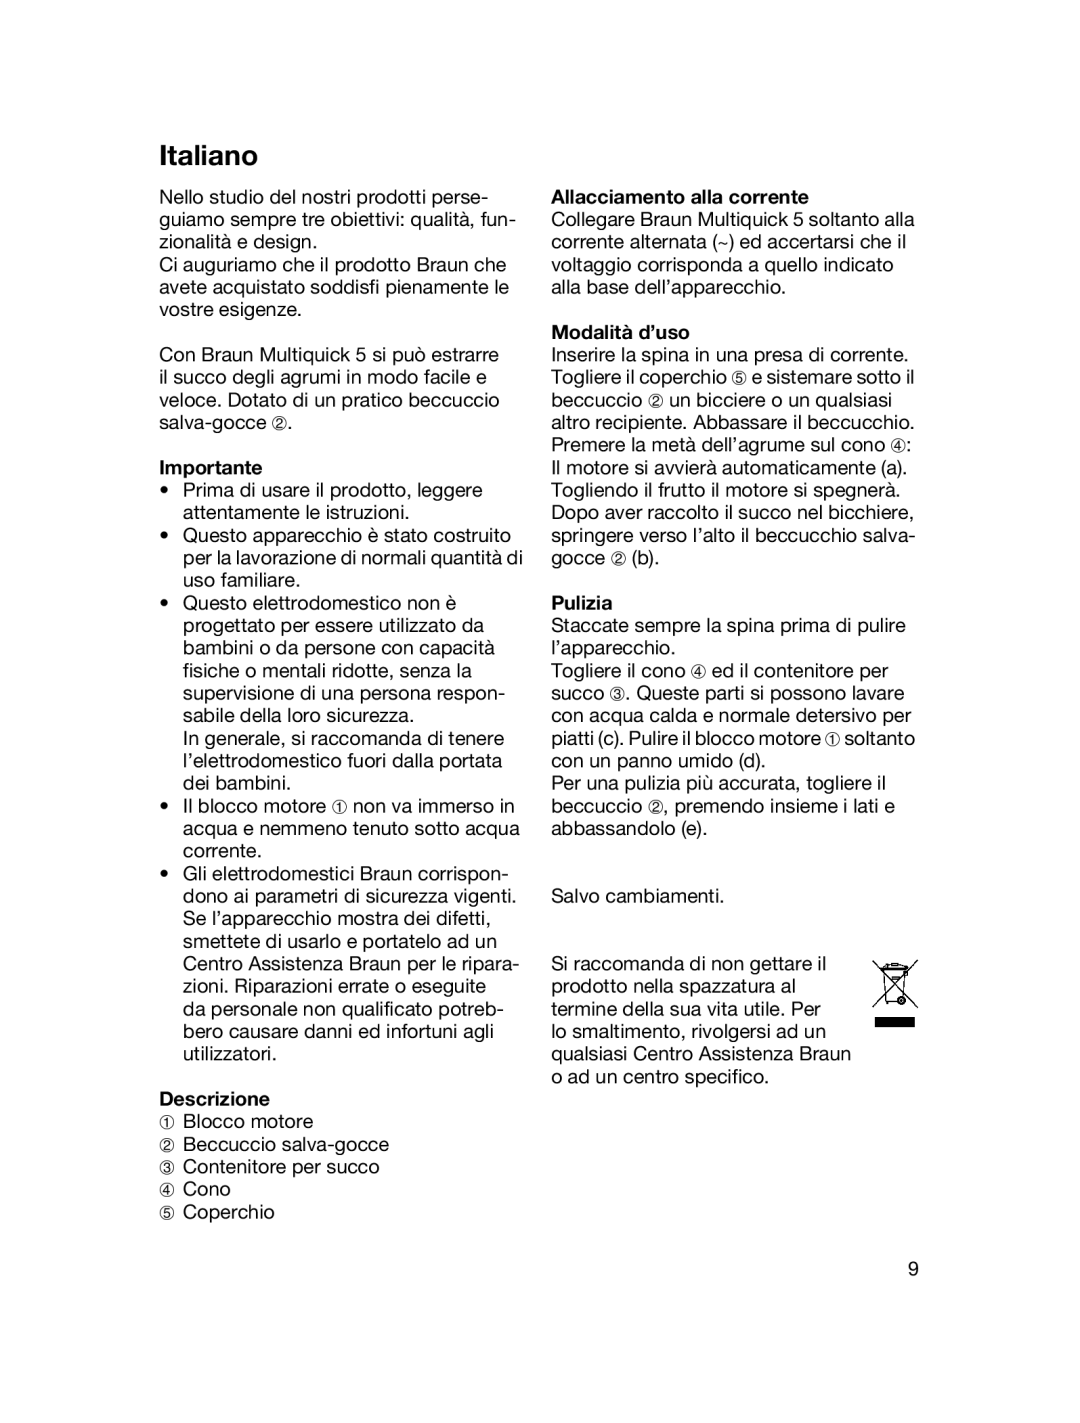 Braun MPZ 22 manual Italiano, Importante, Descrizione, Allacciamento alla corrente, Modalità d’uso, Pulizia 